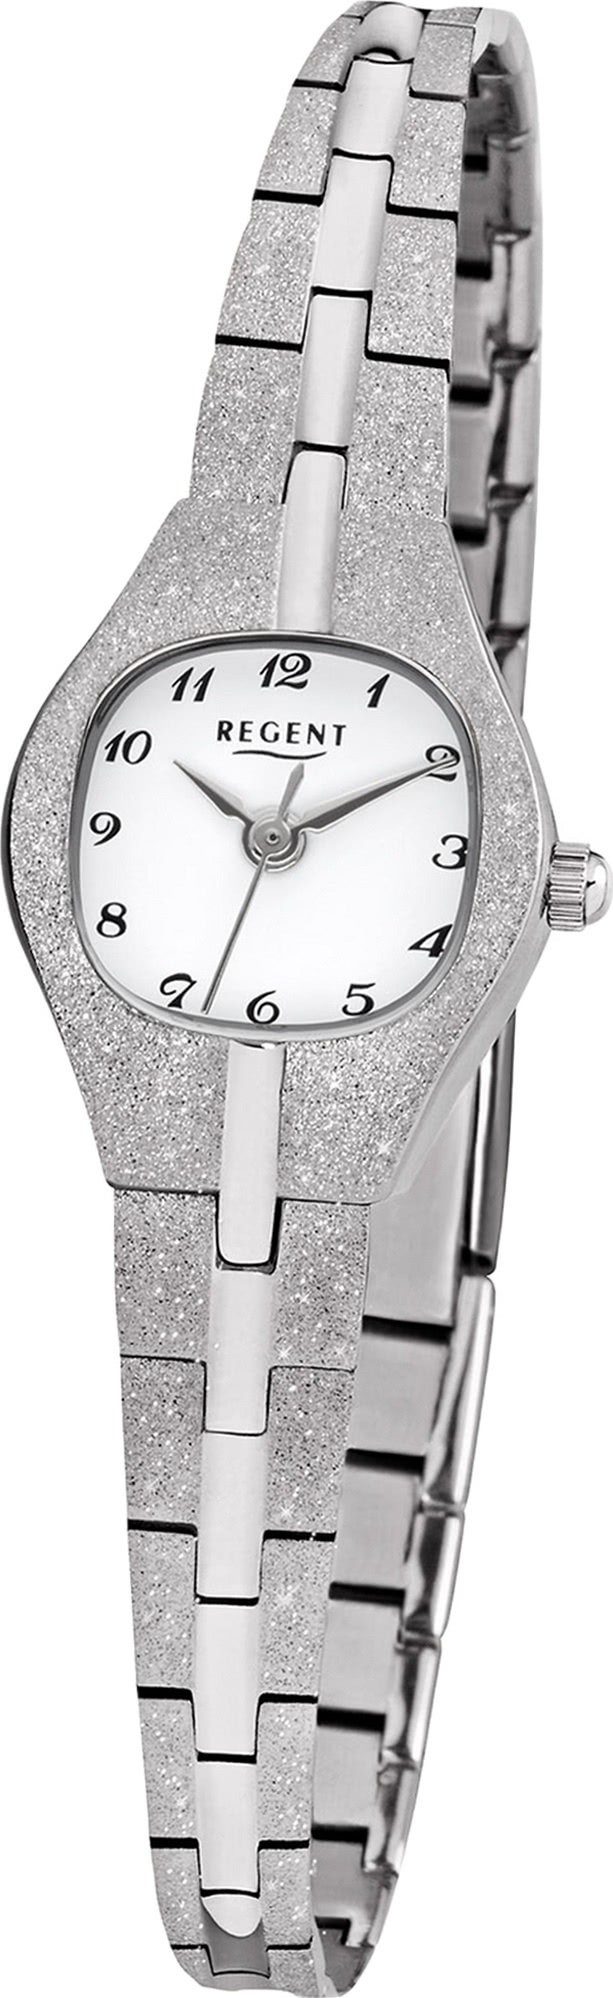 Damen Uhren Regent Quarzuhr D2URF626 Regent Metall Damen Uhr F-626 Analog, Damenuhr mit Metallarmband, eckiges Gehäuse, klein (c